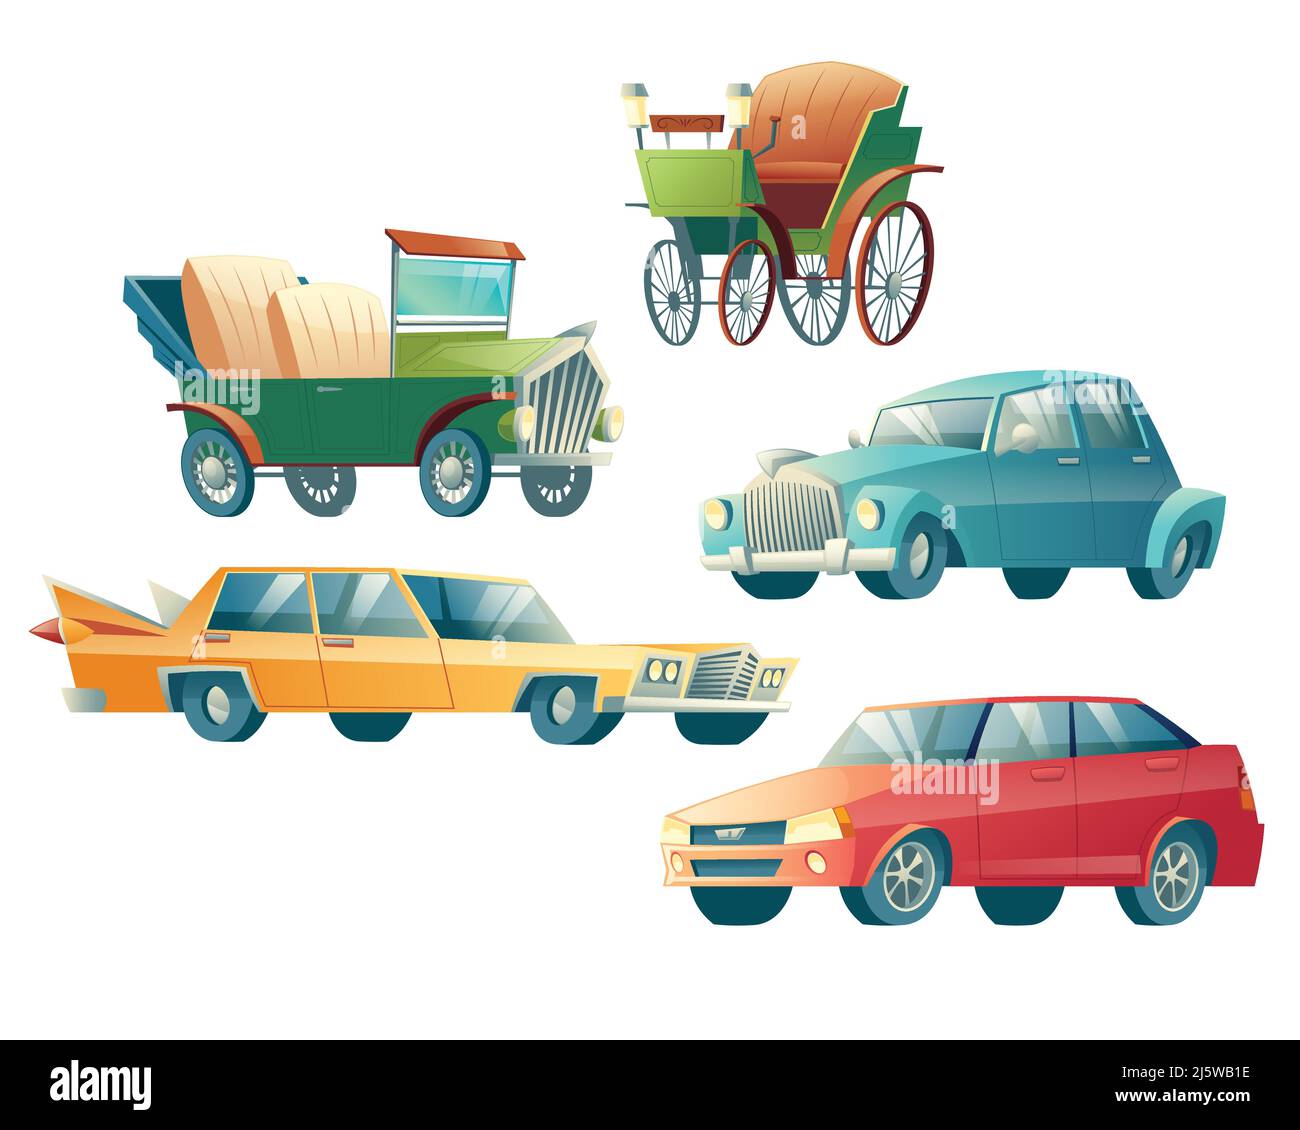 Moderne und Retro-Autos Cartoon-Vektor-Symbole auf weißem Hintergrund isoliert gesetzt. Primitive, dampfbetriebene Automobil, 19. Jahrhundert Benzin-Fahrzeug und Co Stock Vektor